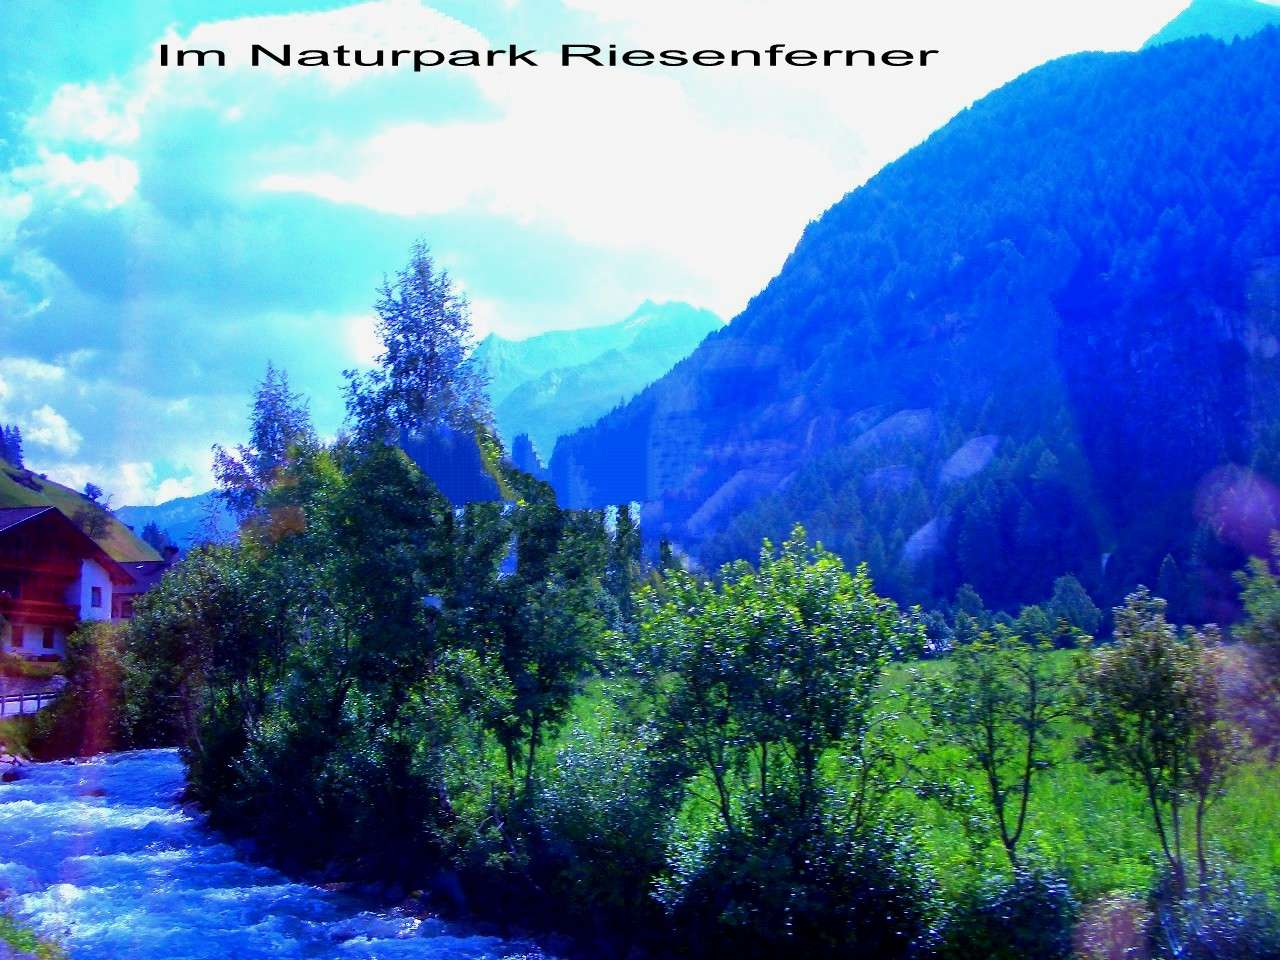 Природний парк Різенфернер пазл онлайн